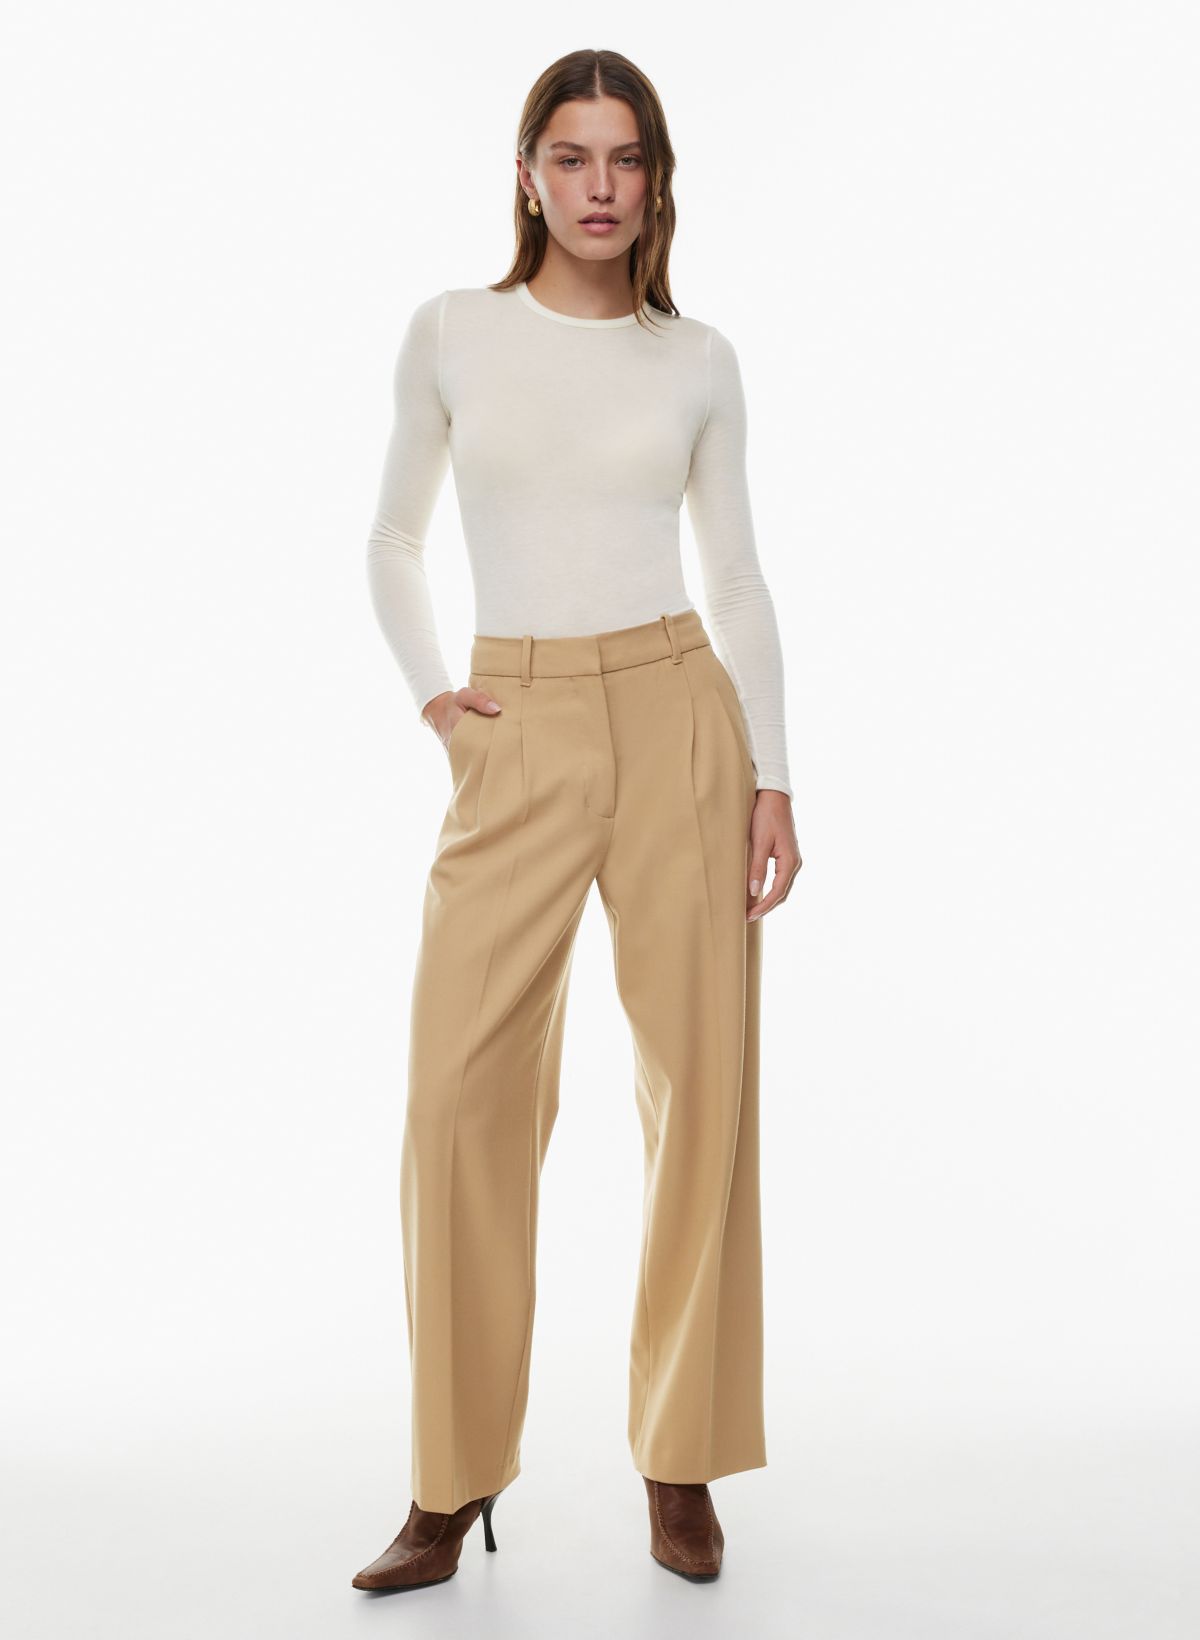 Buy Casual Elegance: Women's Brown 6-Pocket Pants - Effortless